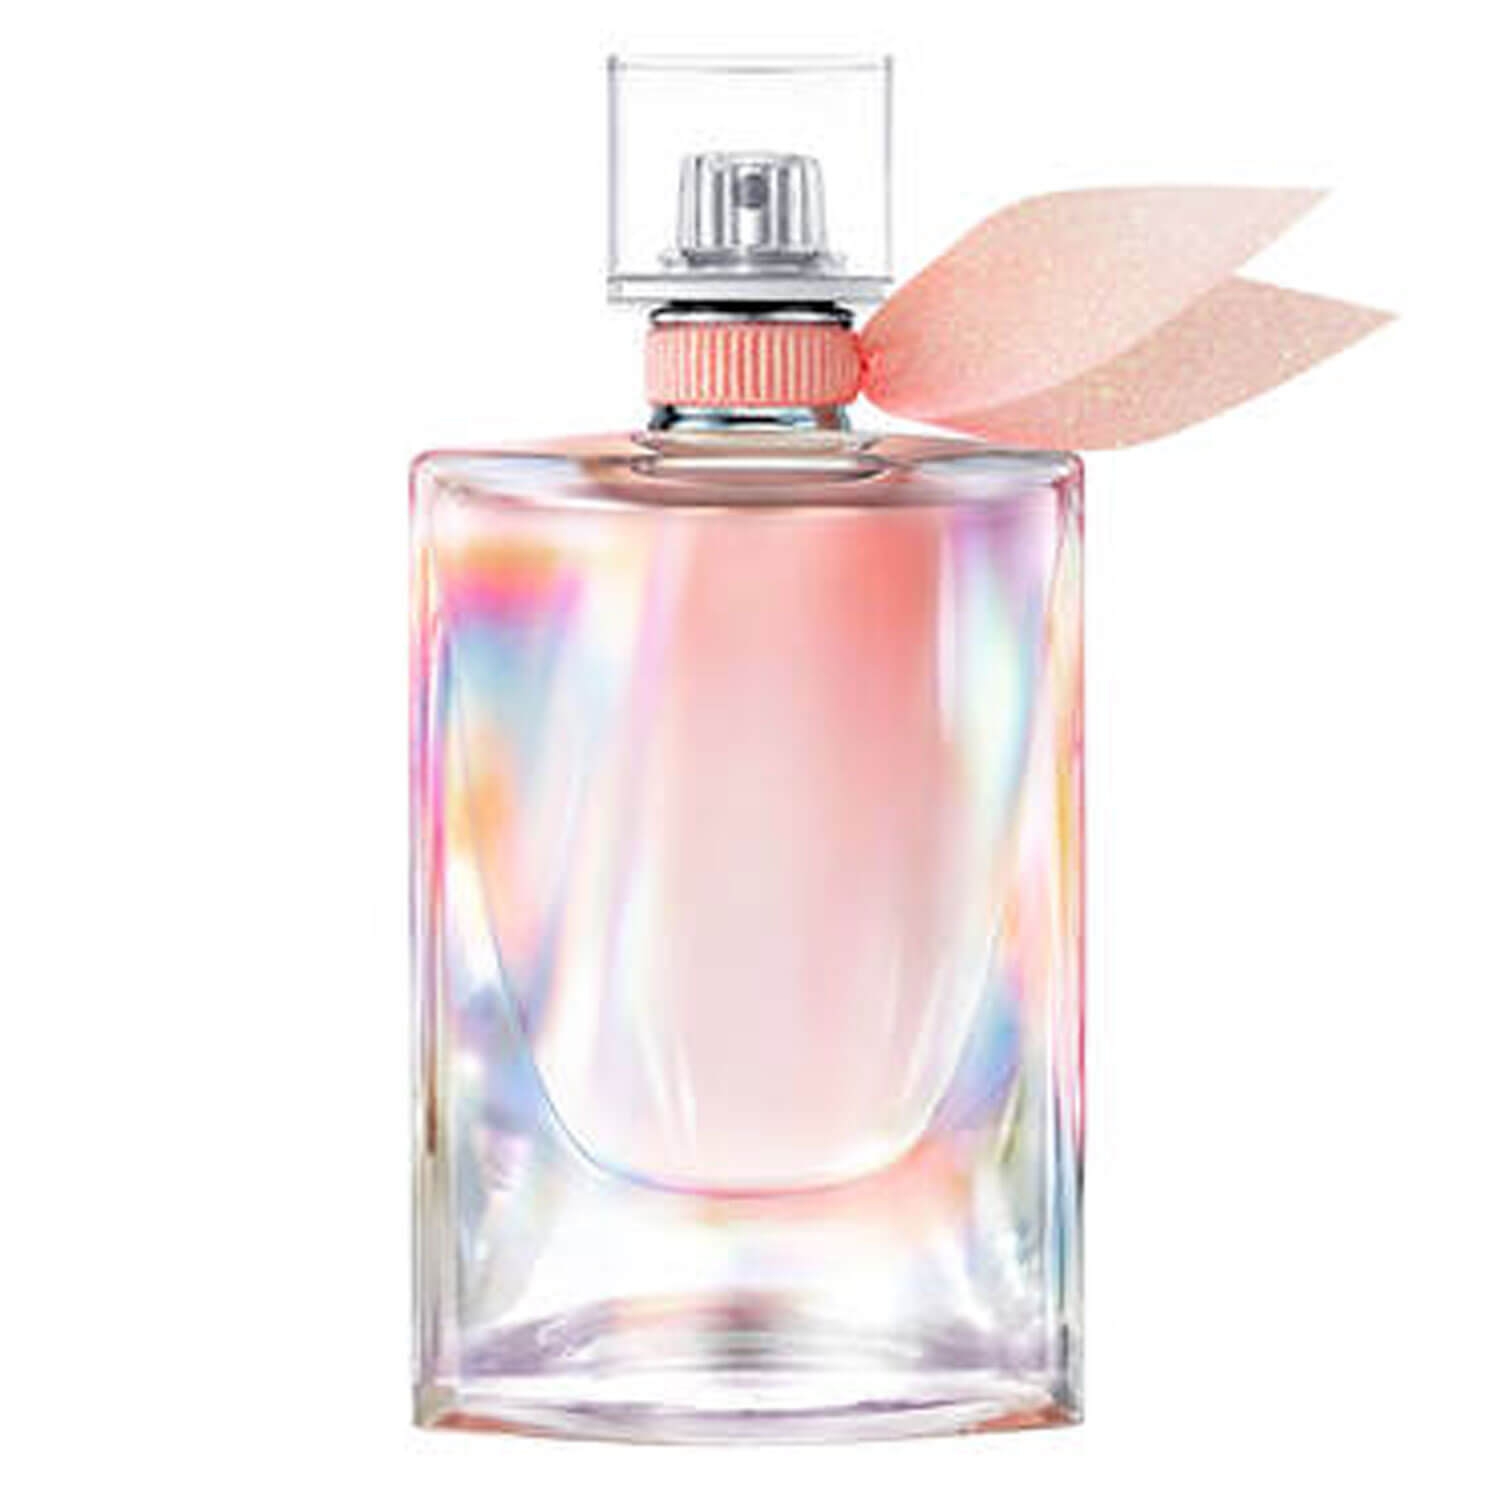 Product image from La Vie est Belle - Soleil Cristal Eau de Parfum